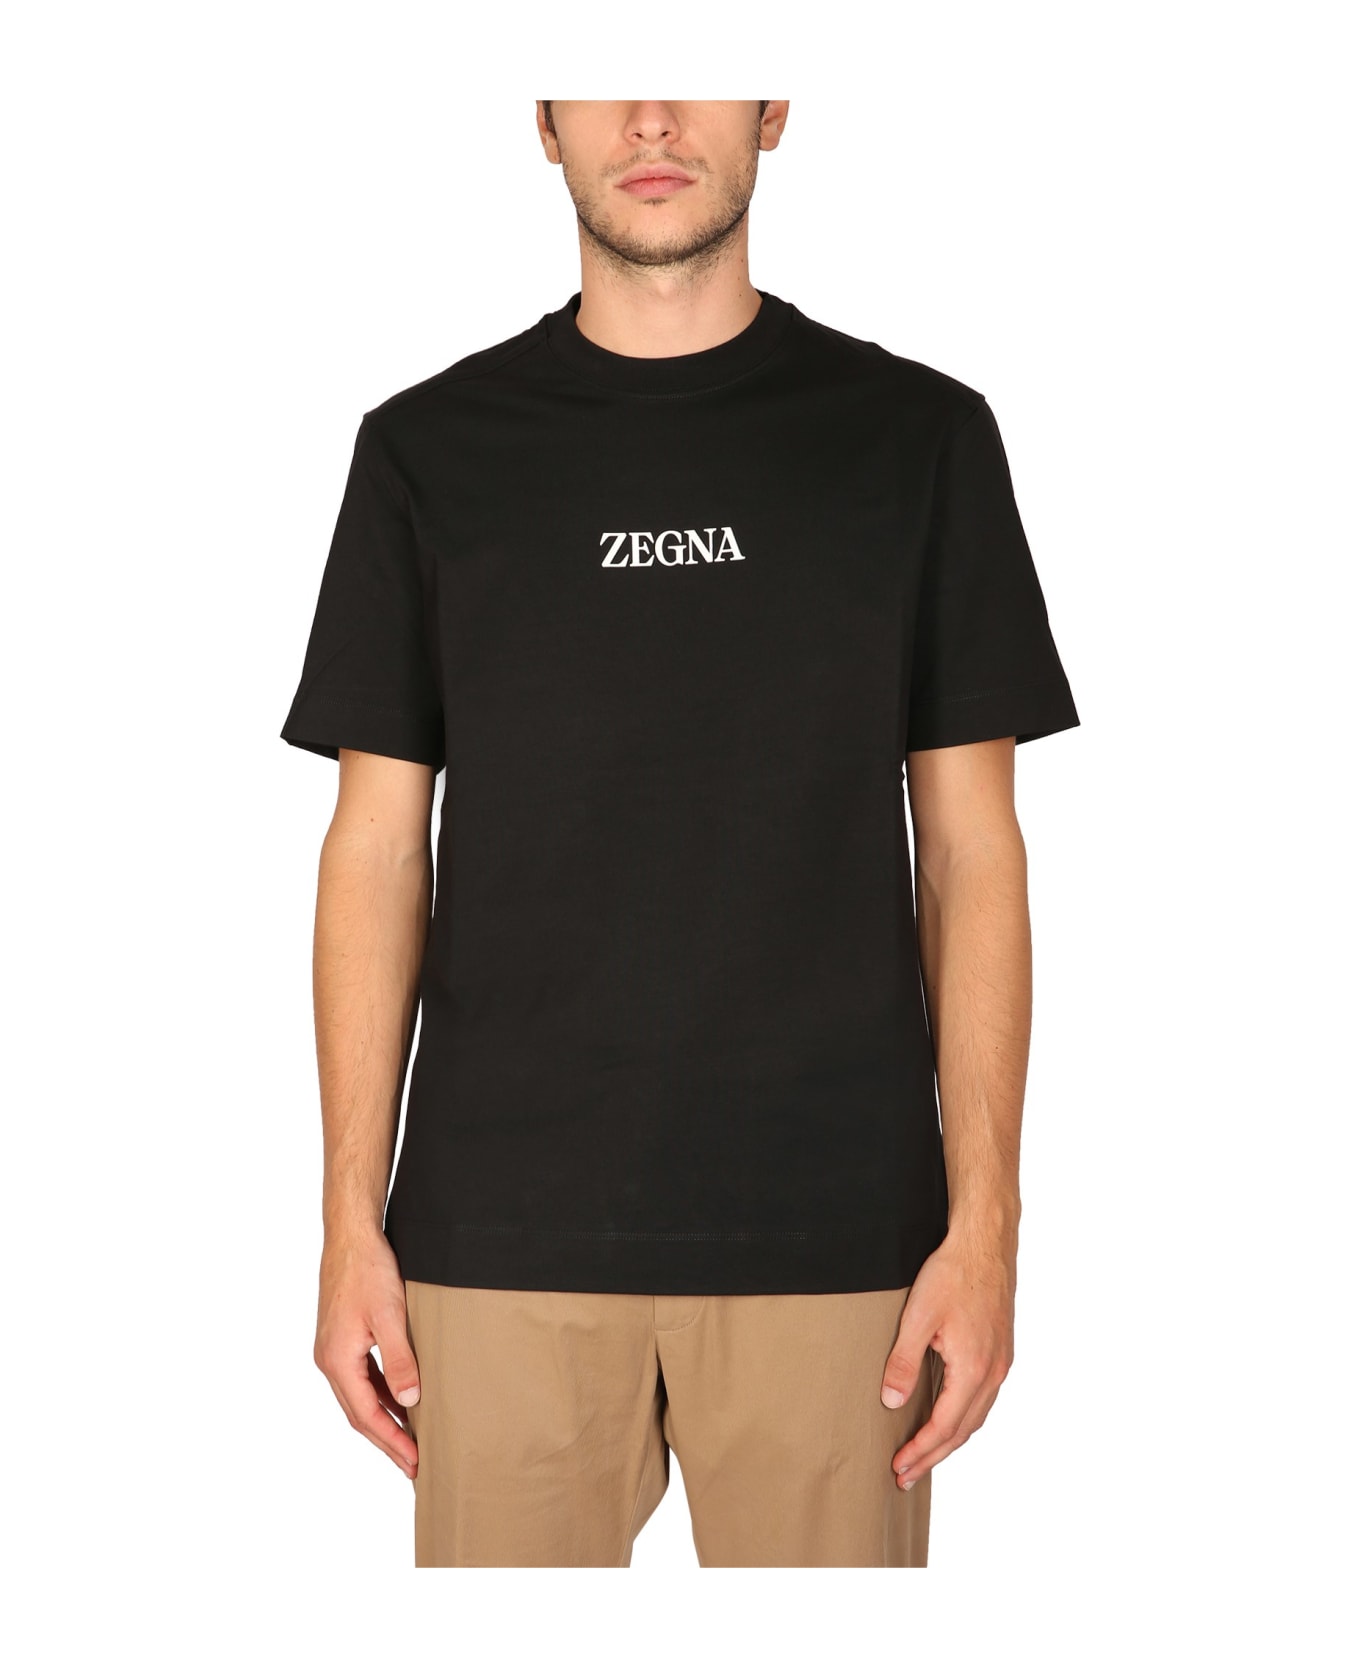 Zegna Crewneck T-shirt シャツ